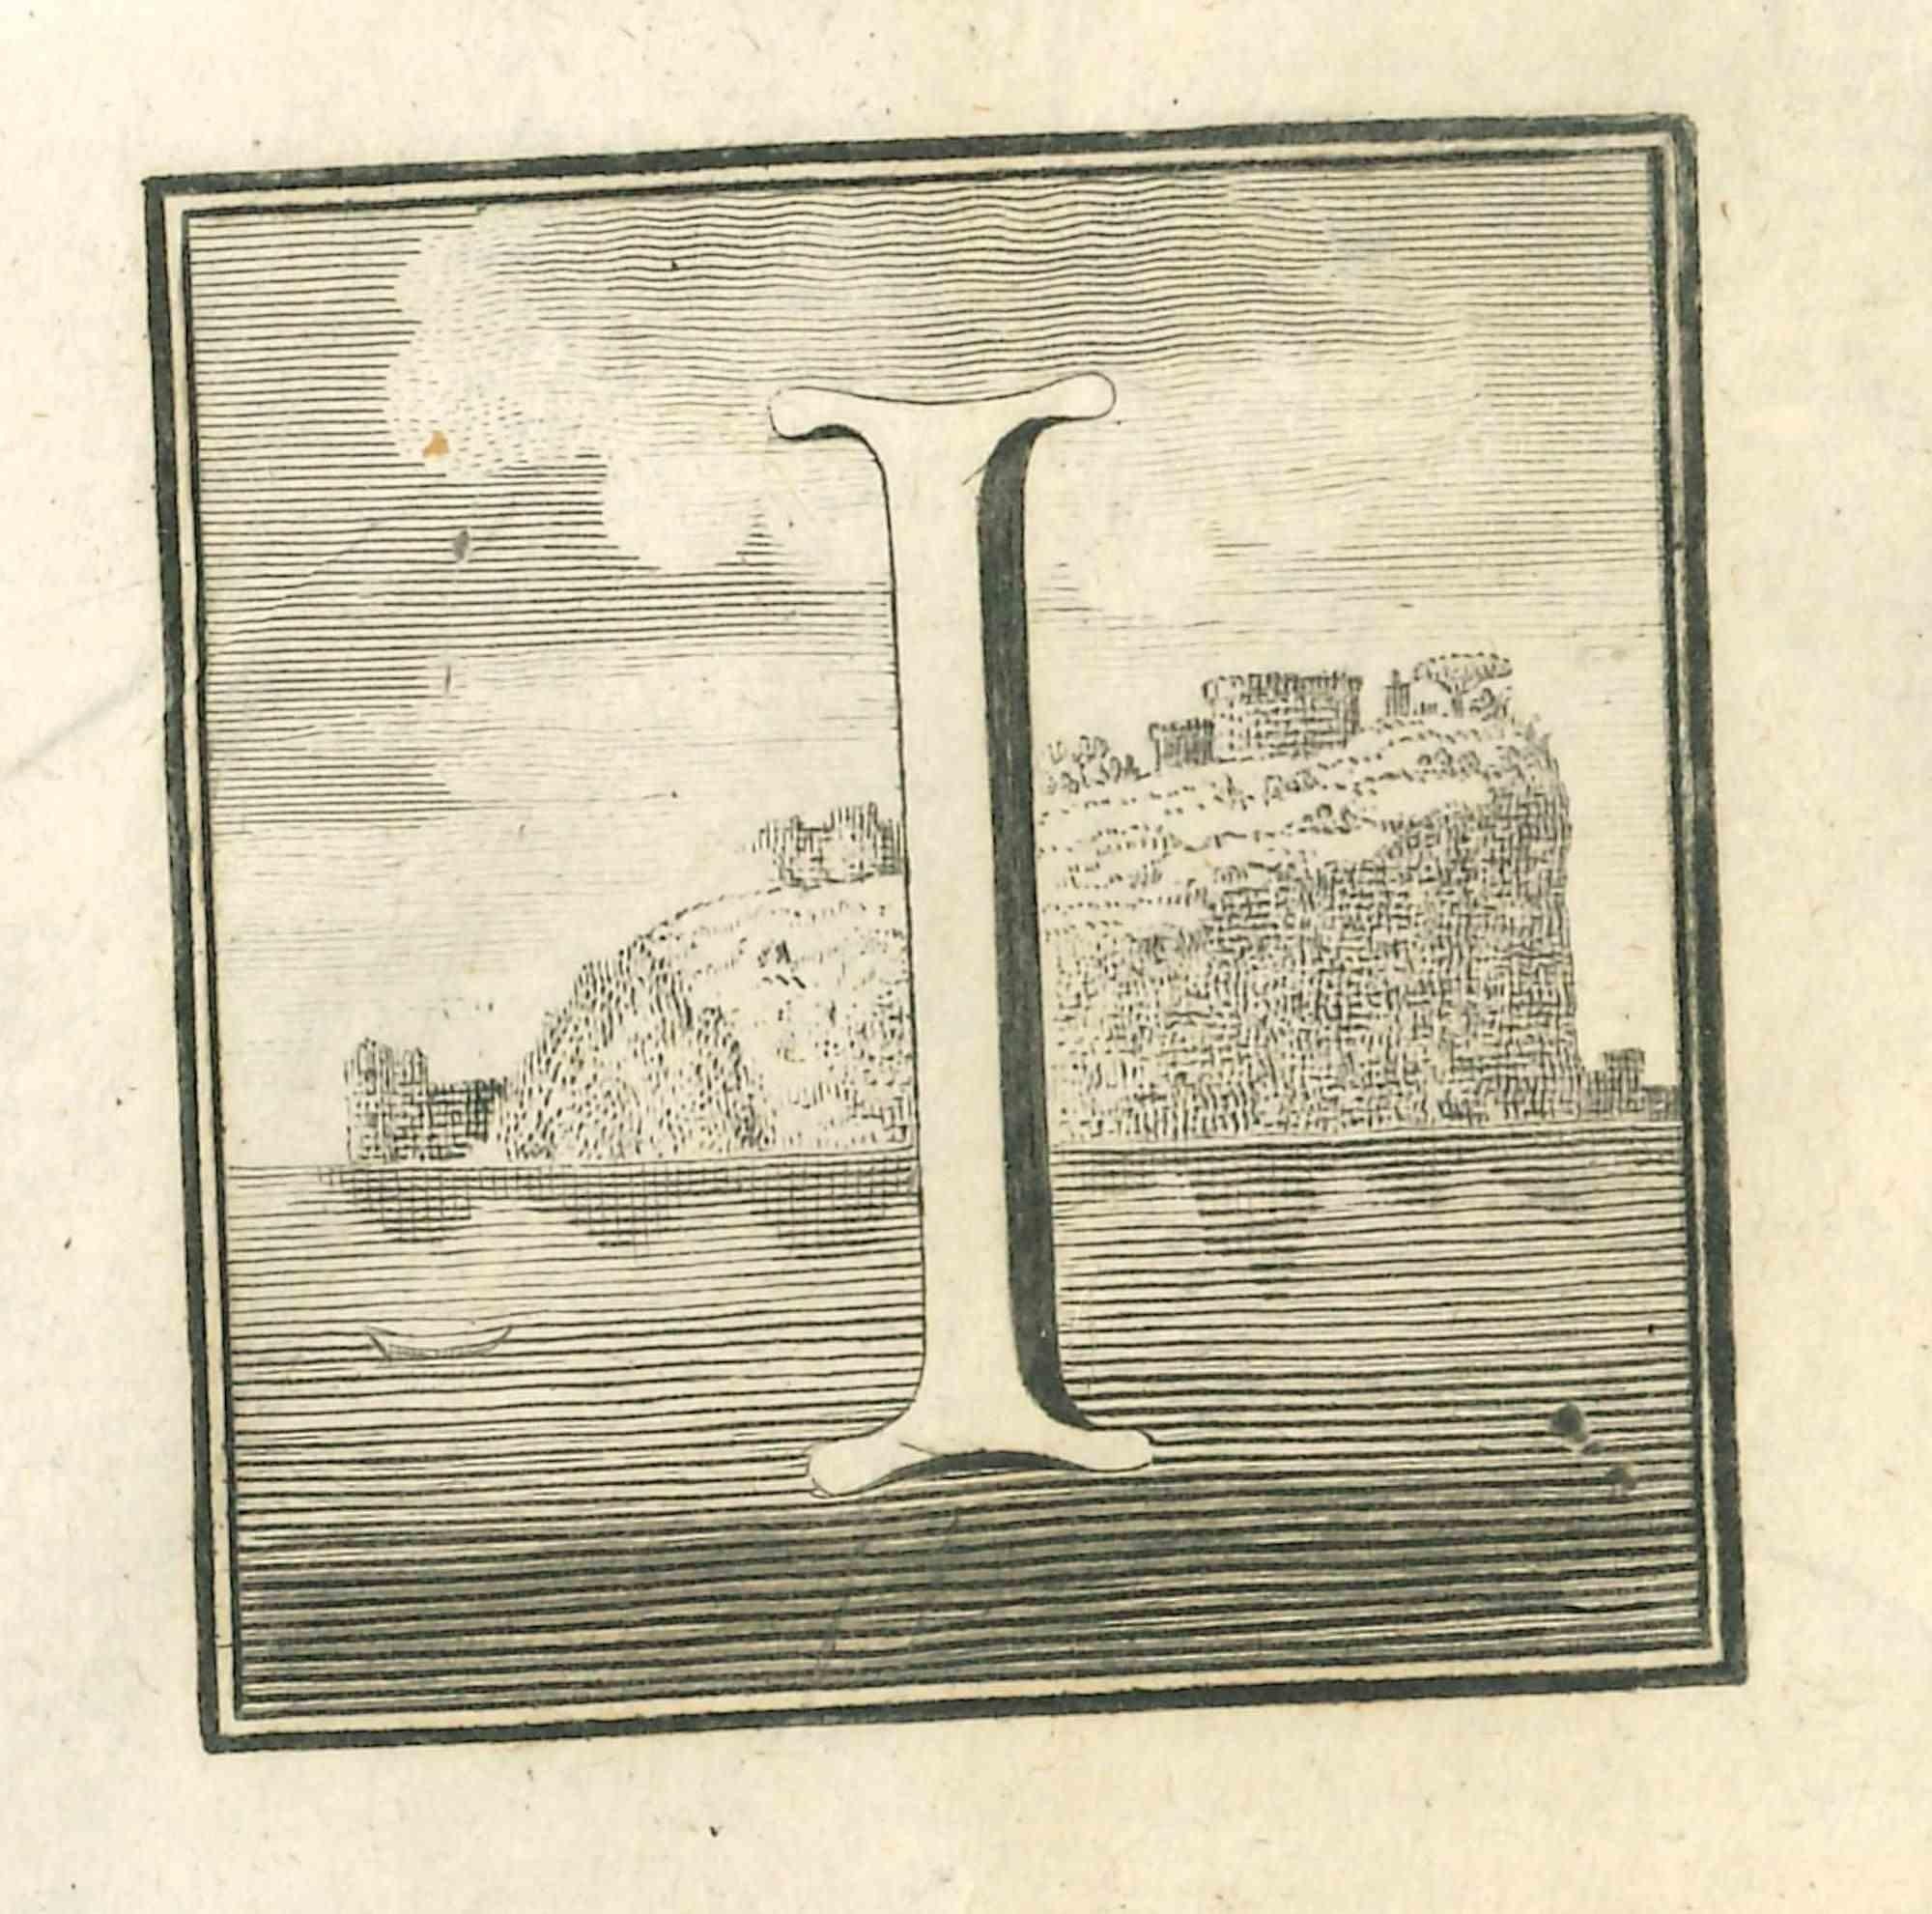 Lettre de l'alphabet I,  de la série "Antiquités d'Herculanum", est une gravure sur papier réalisée par Luigi Vanvitelli au 18ème siècle.

Bonnes conditions.

La gravure appartient à la suite d'estampes "Antiquités d'Herculanum exposées" (titre